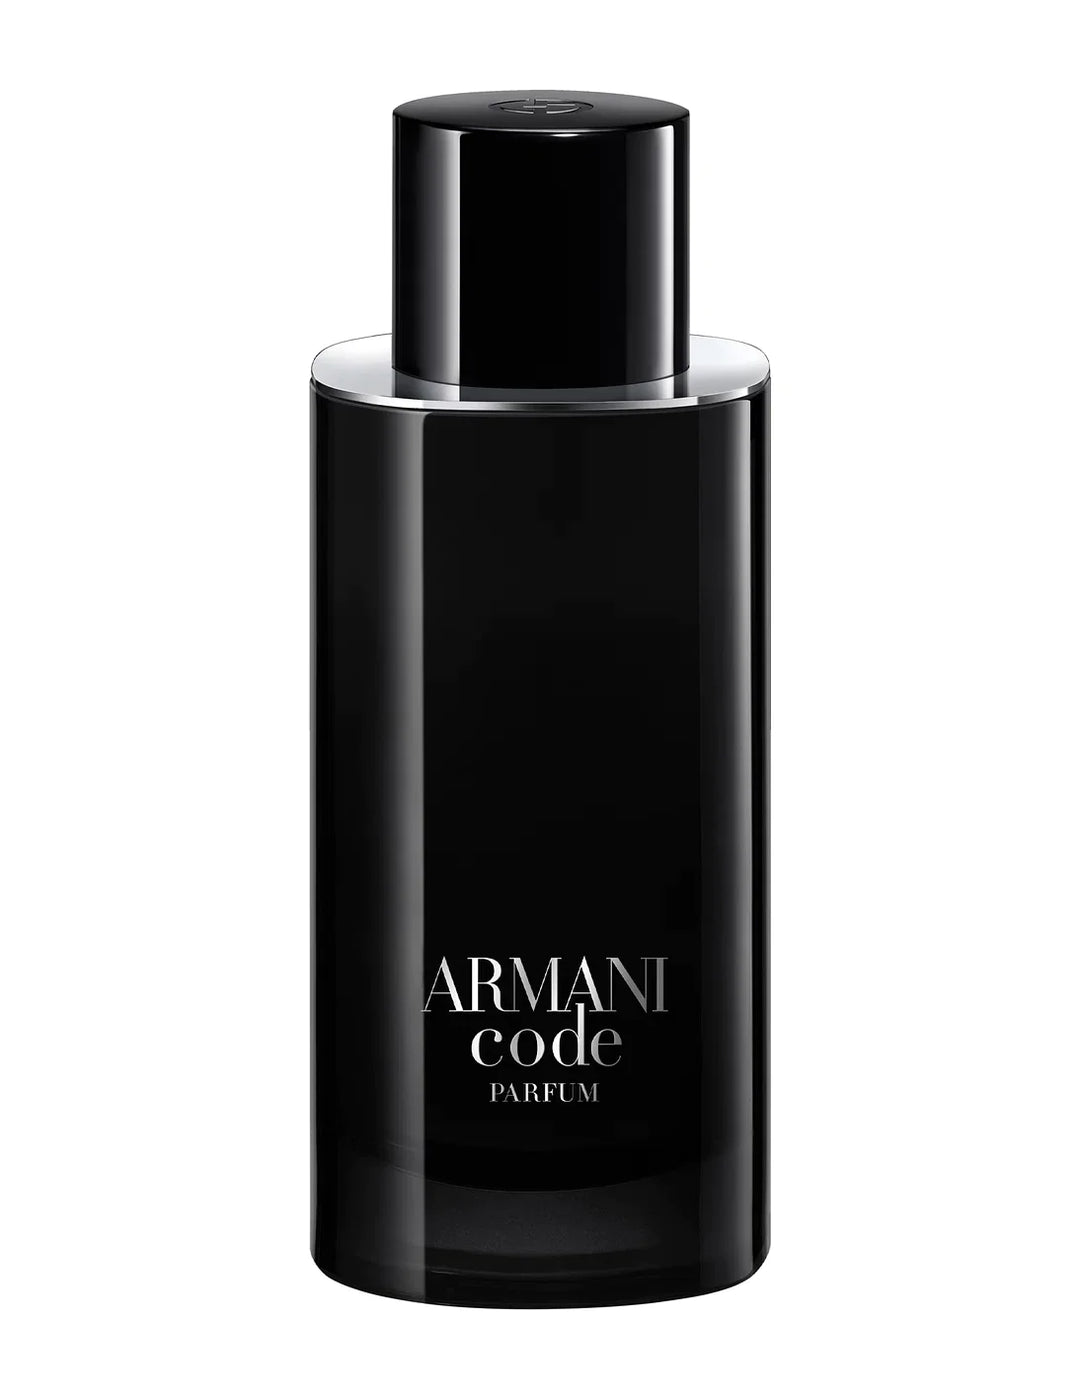 GIORGIO ARMANI Armani Code Parfum